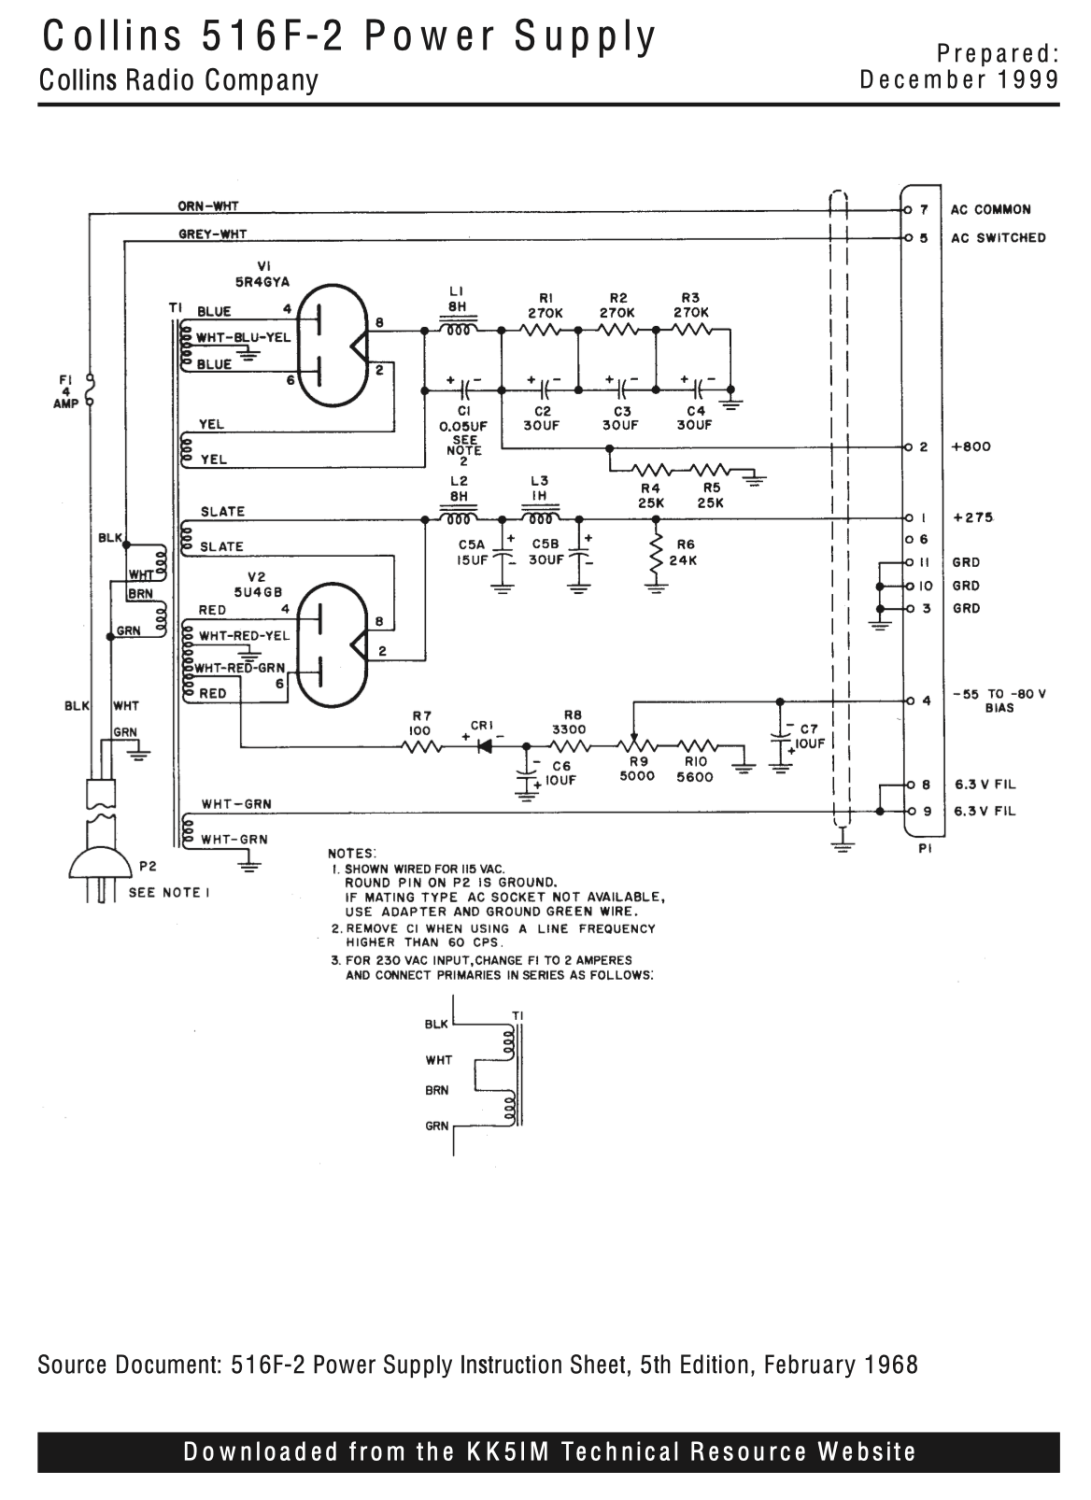 Collins 516F-2 AC Power Supply - Schematic Diagram 2